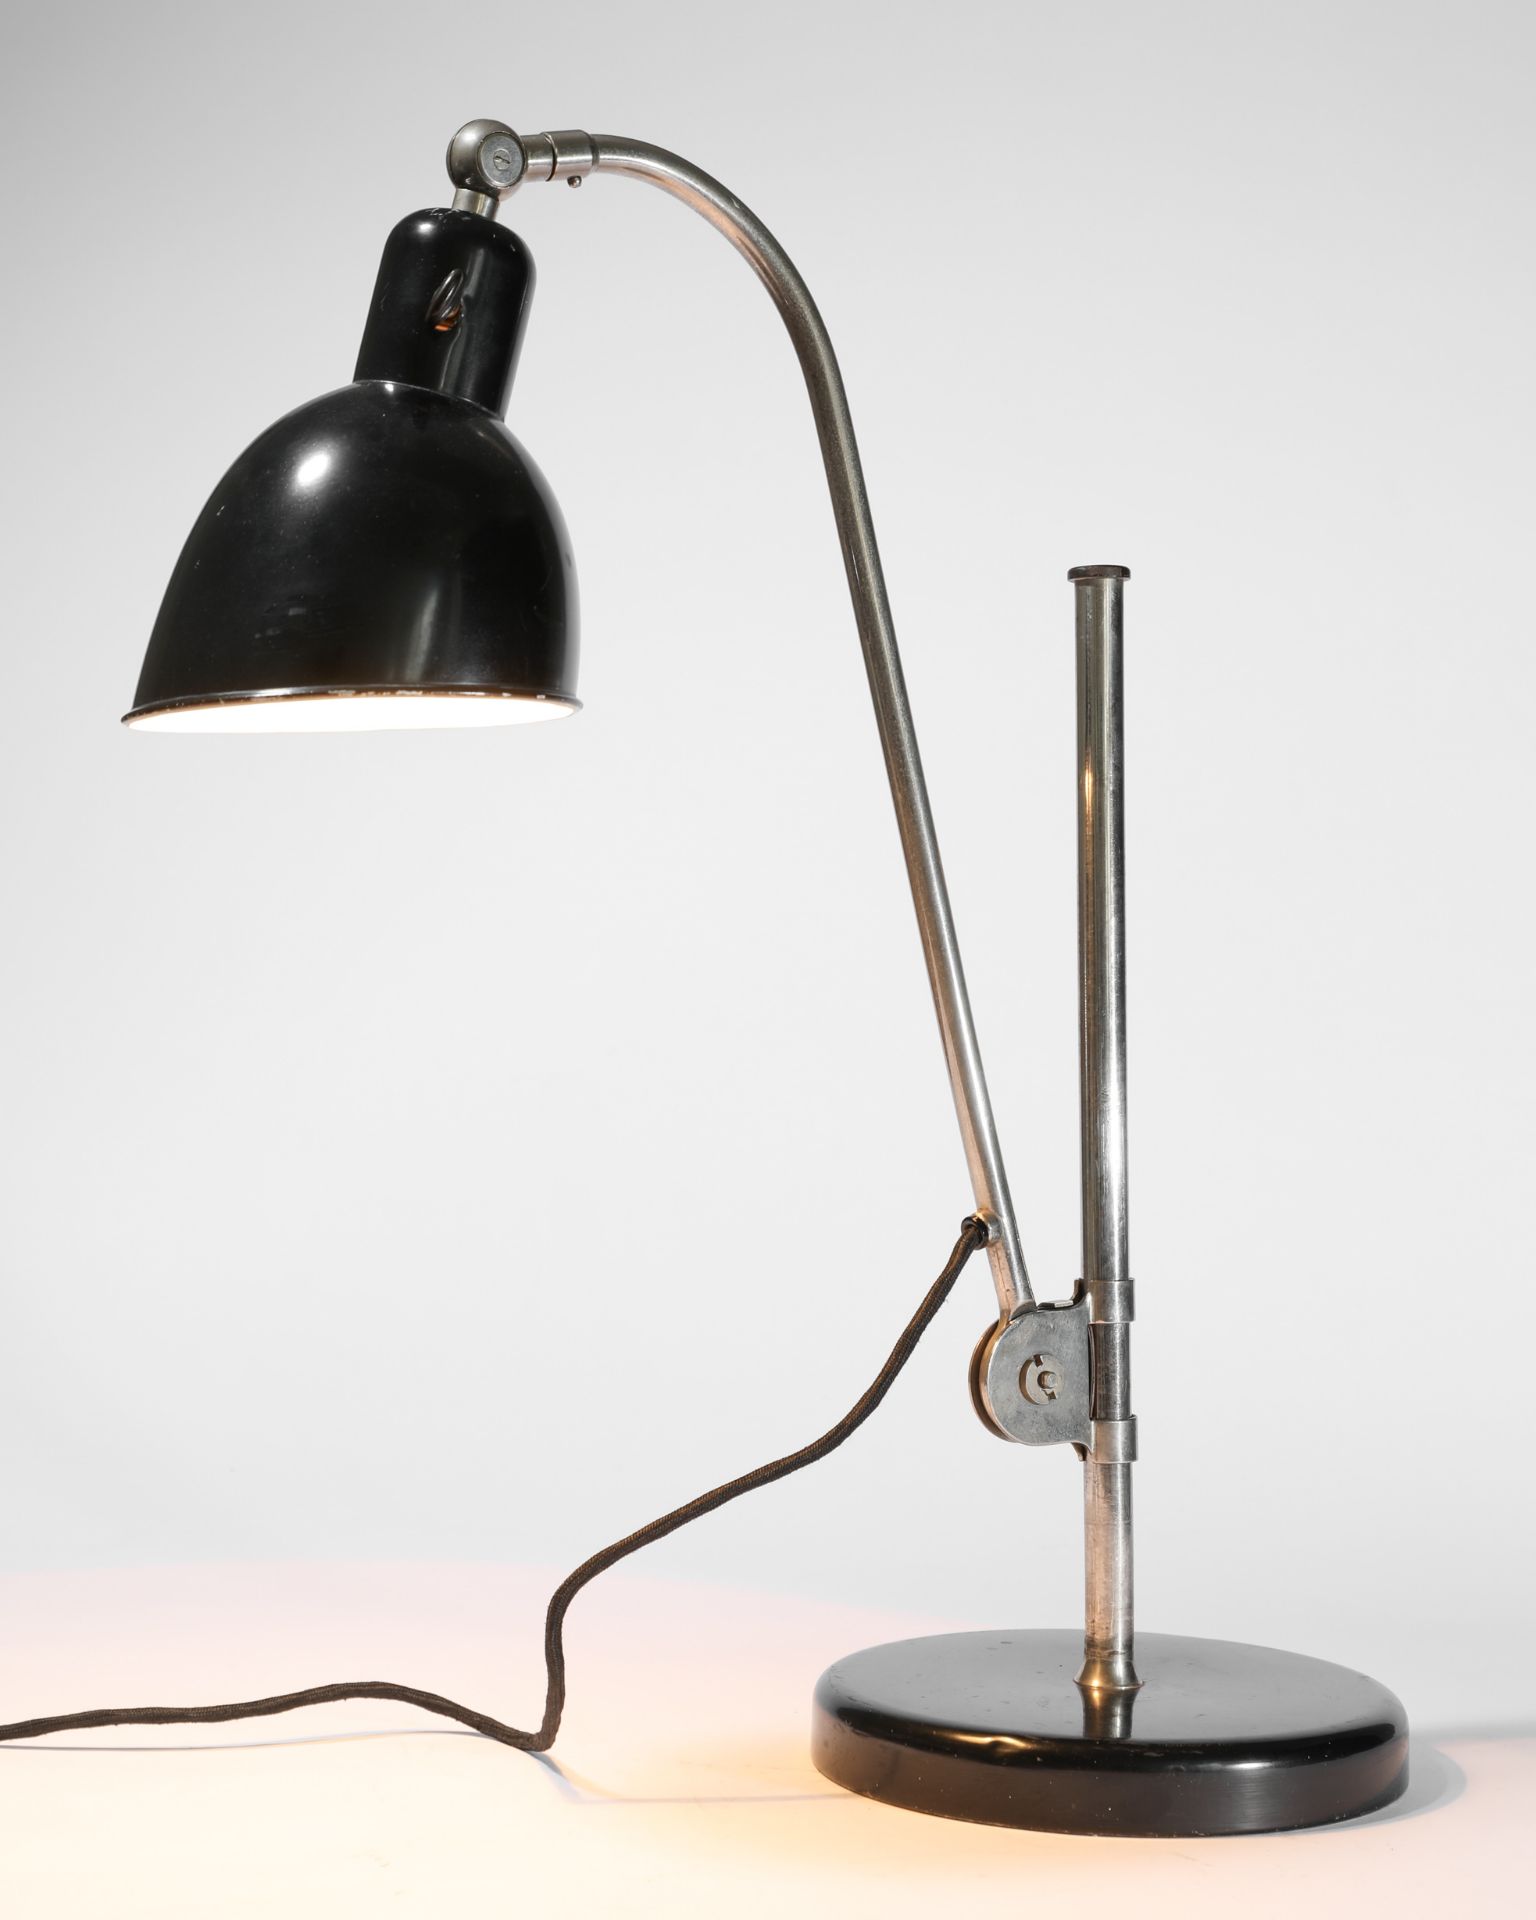 Christian Dell, Belmag, Desk Lamp Model Type K